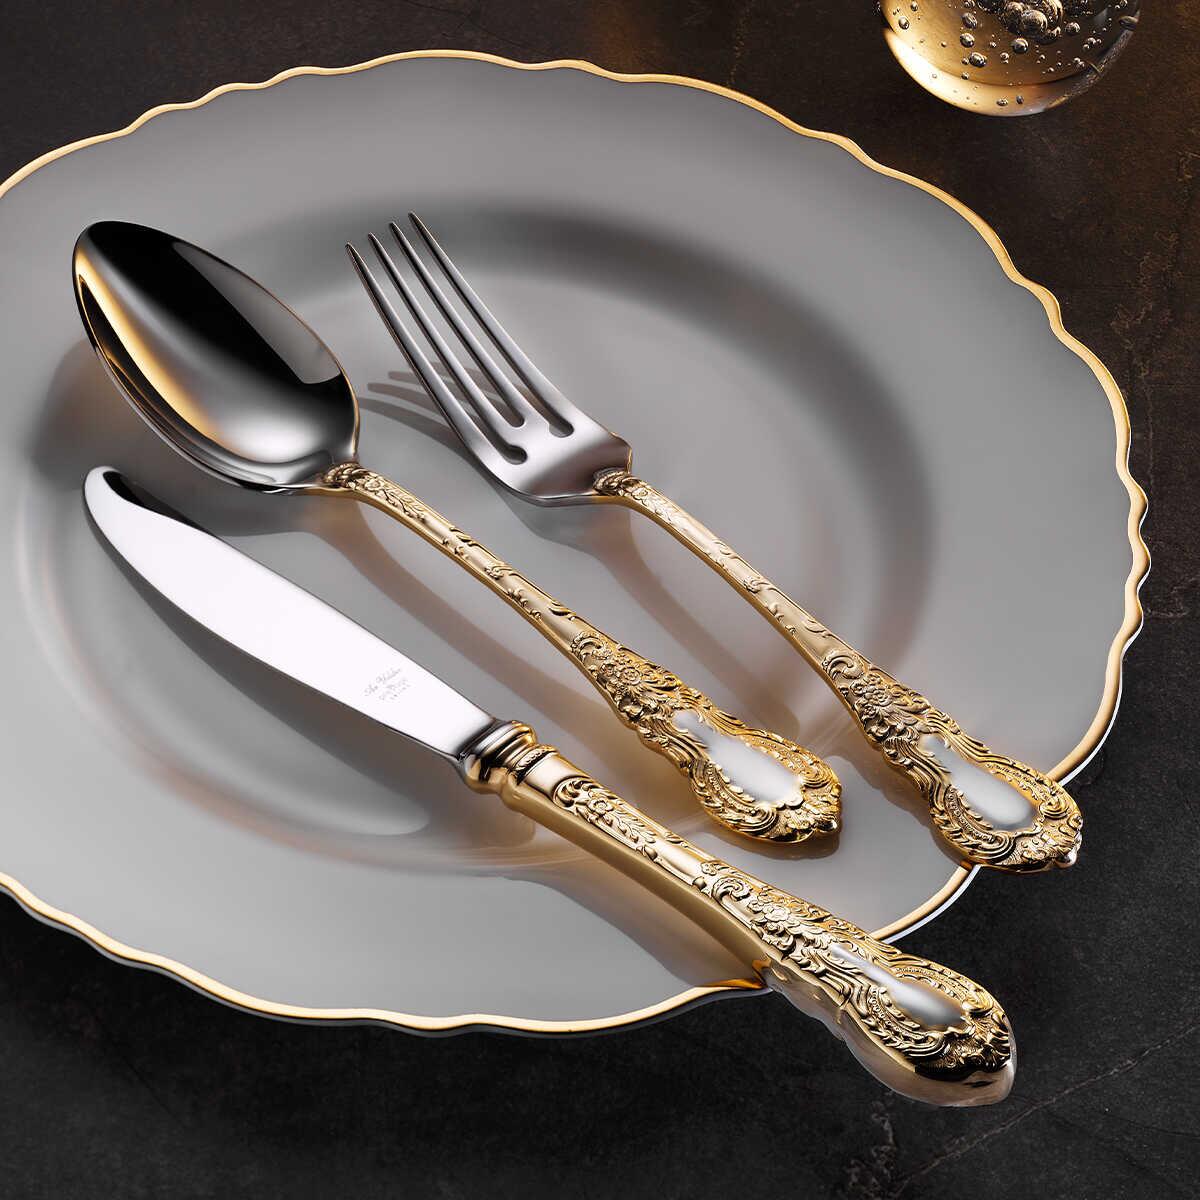 Aryıldız Prestige Fork Spoon Knife Plus Glossy Box 89 Pieces